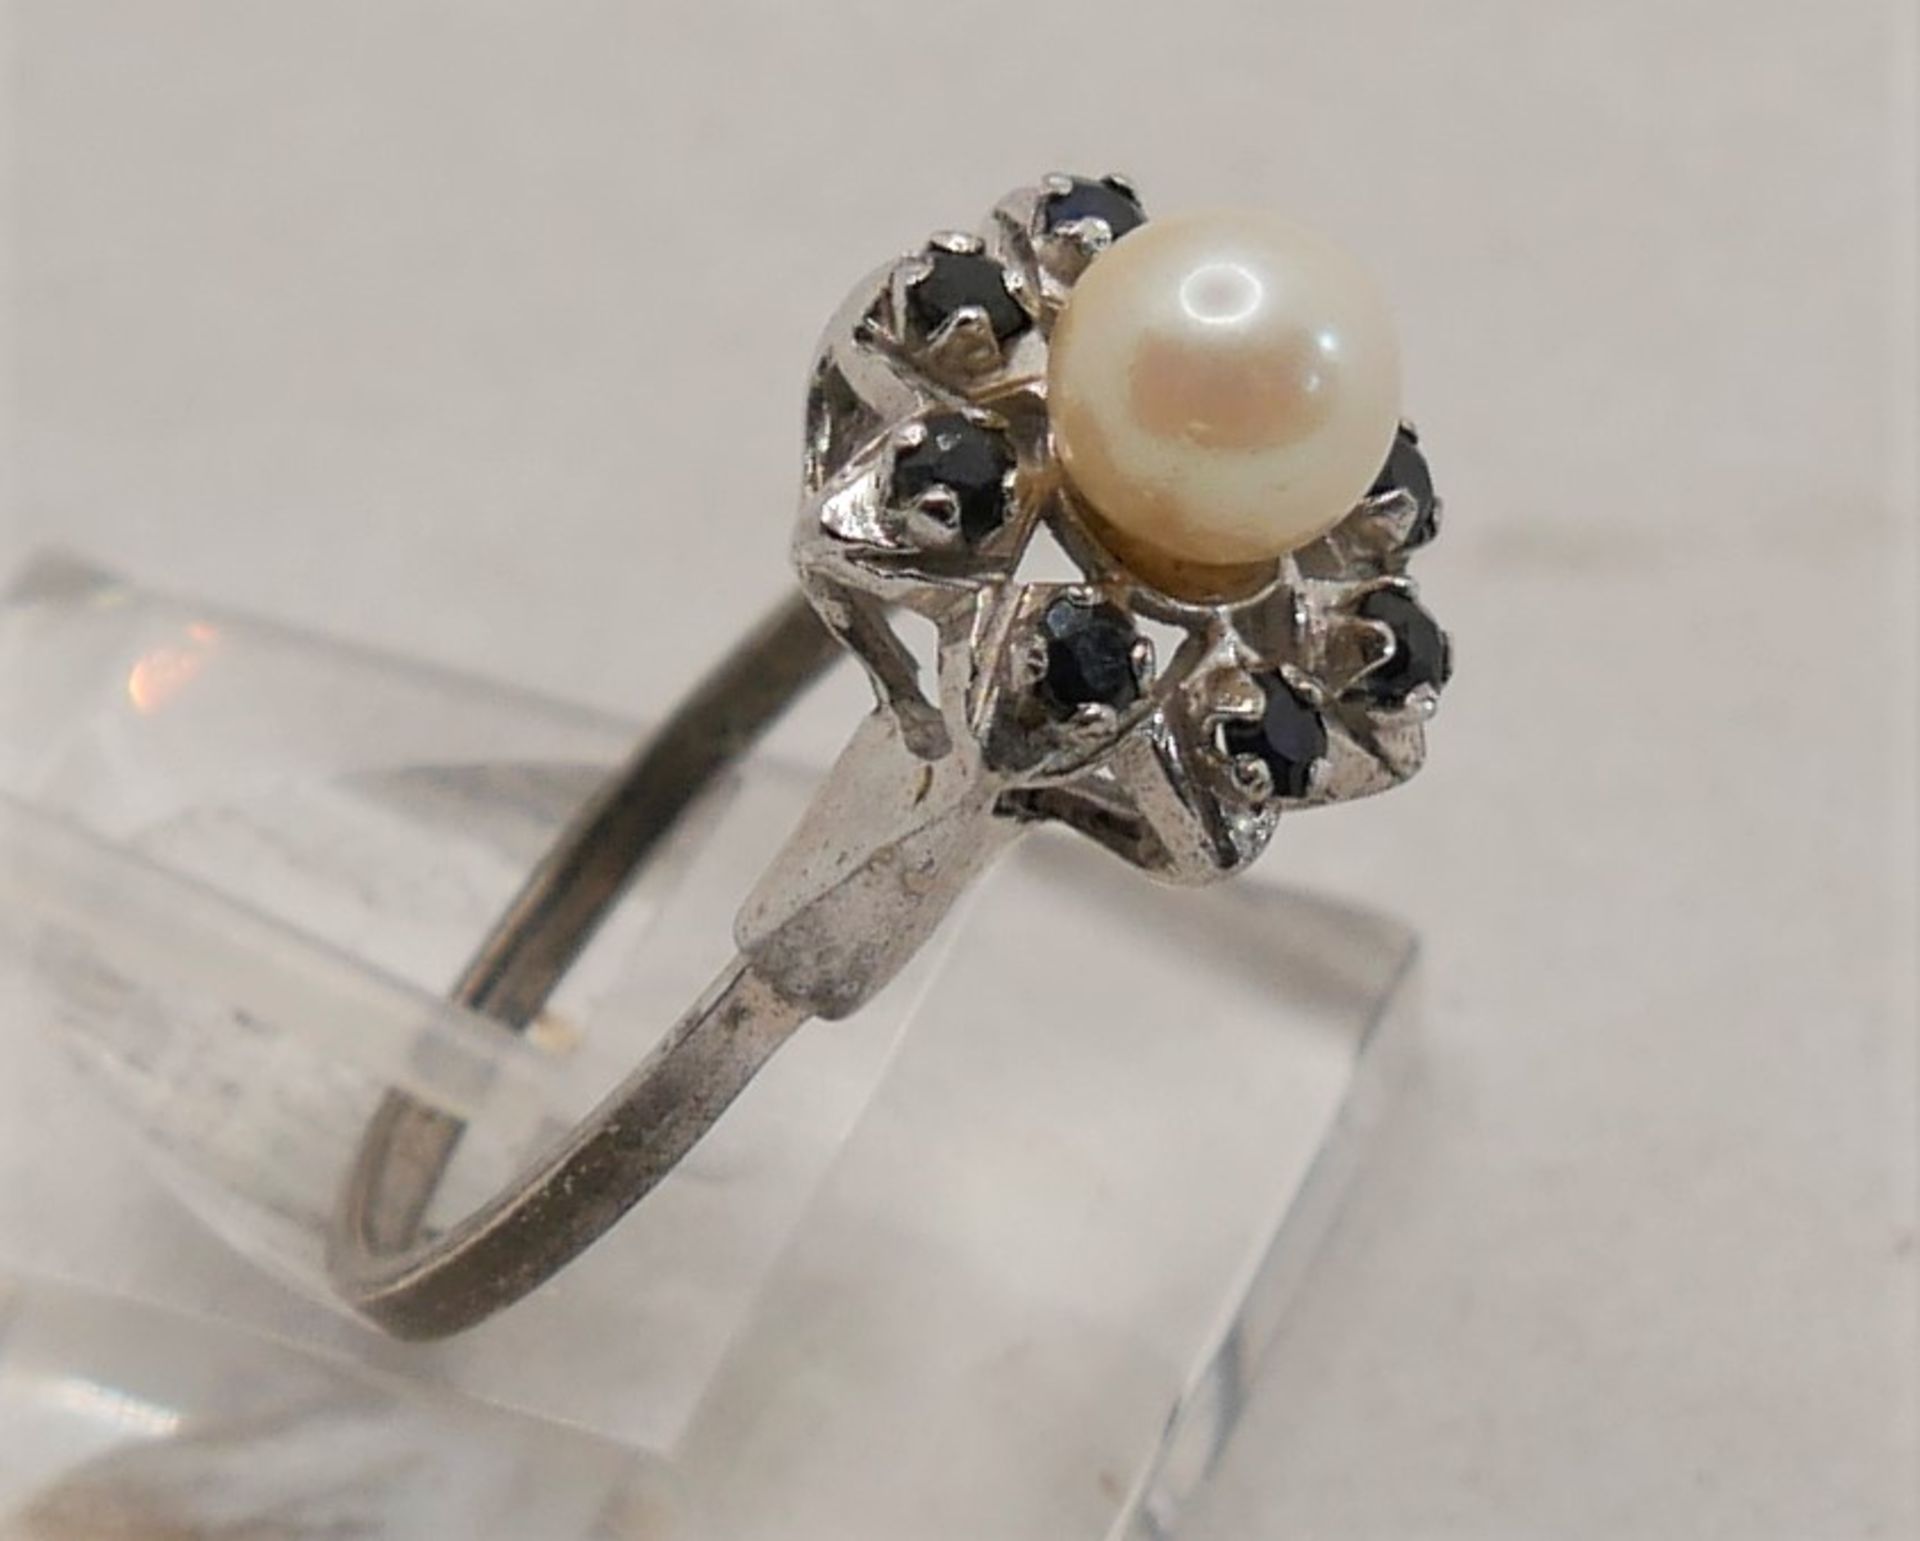 Damenring 925er Silber gepunzt, mit einer Perle und blauen Glassteinen, Ringgröße 60 - Image 2 of 2